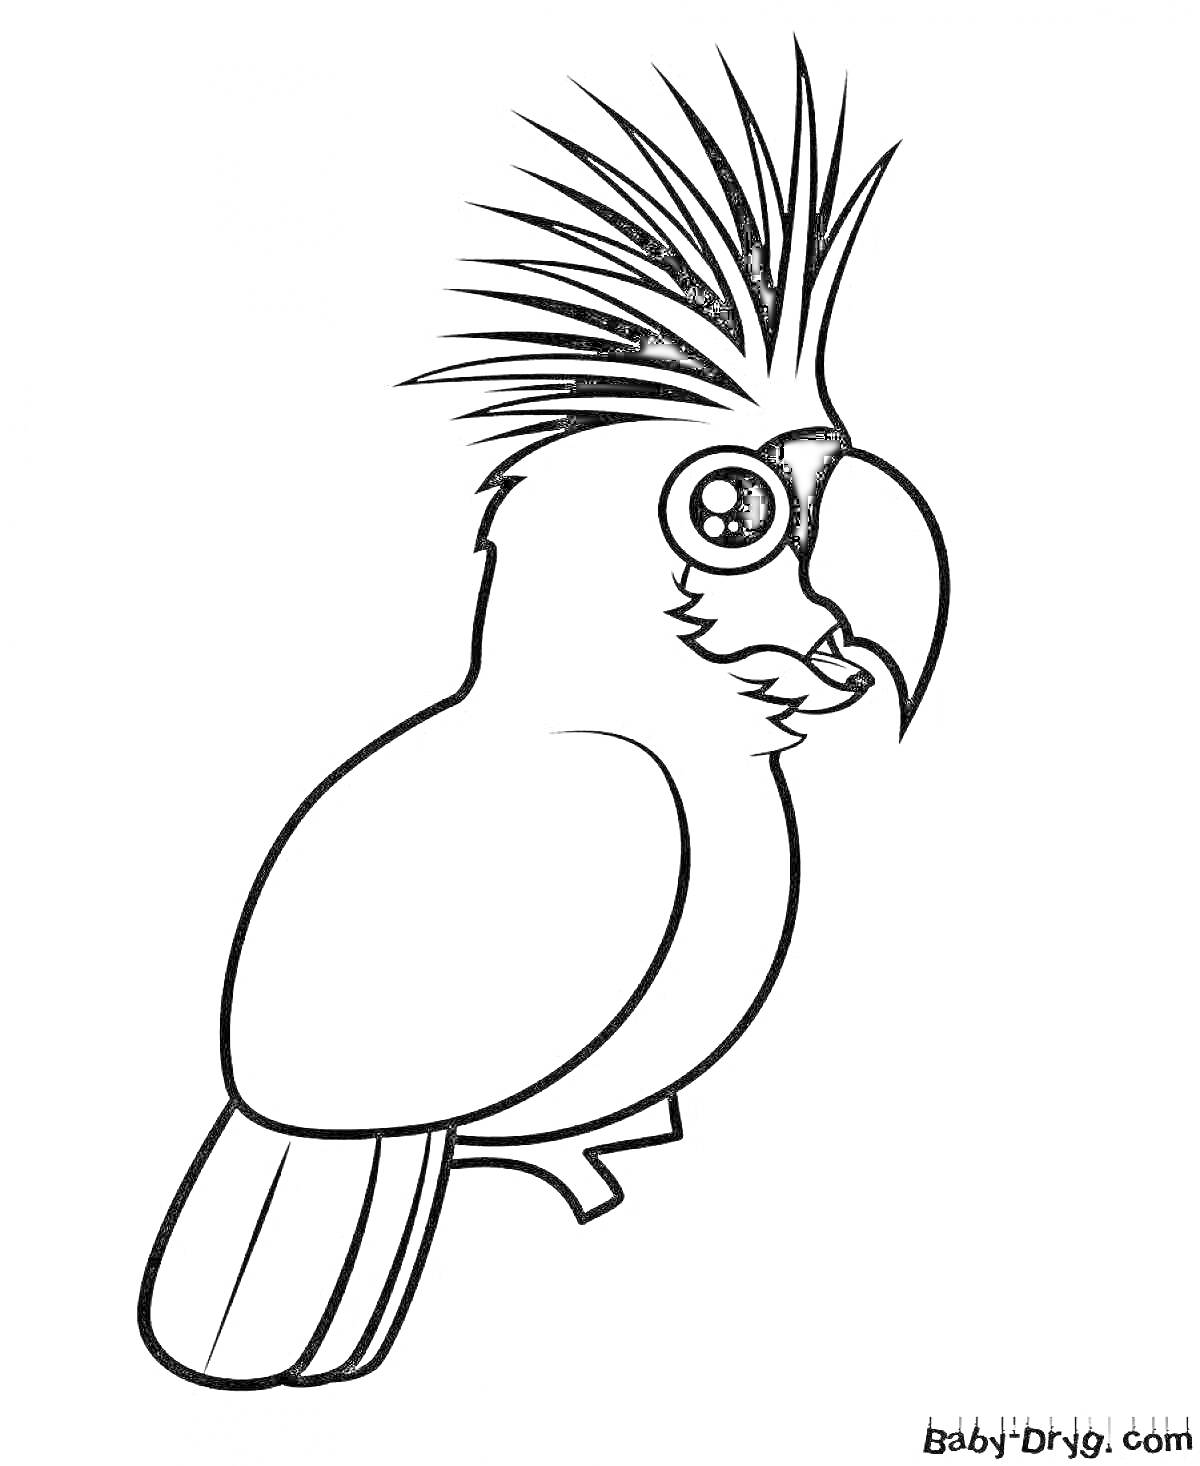 Раскраска Попугай с хохолком на ветке